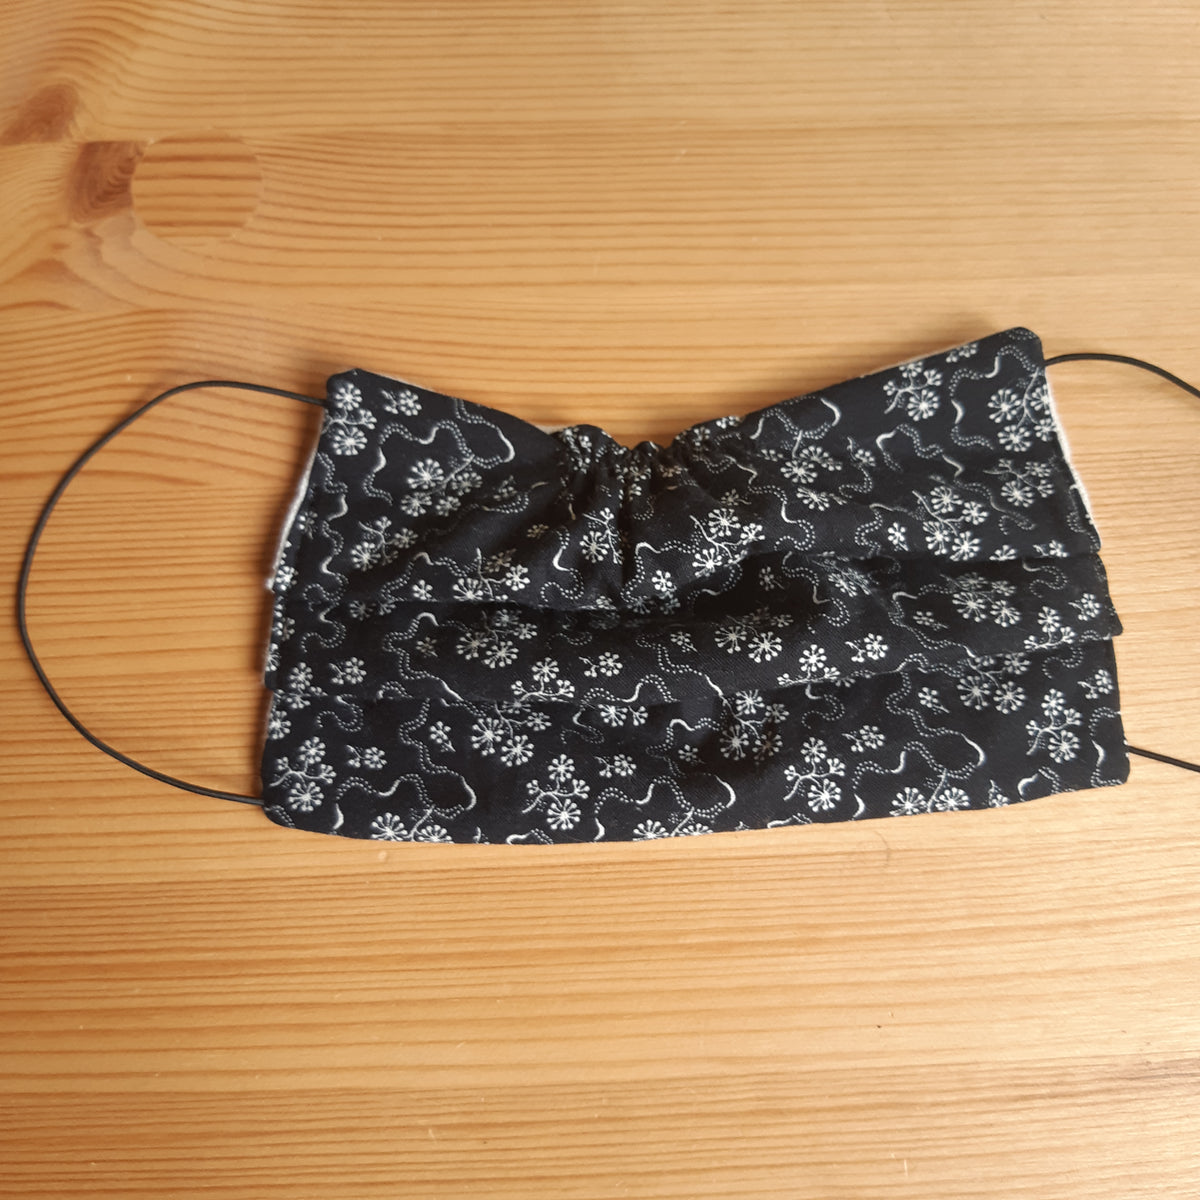 masque protection coton elastique 2 plis fabrication artisanale france noir petites fleurs